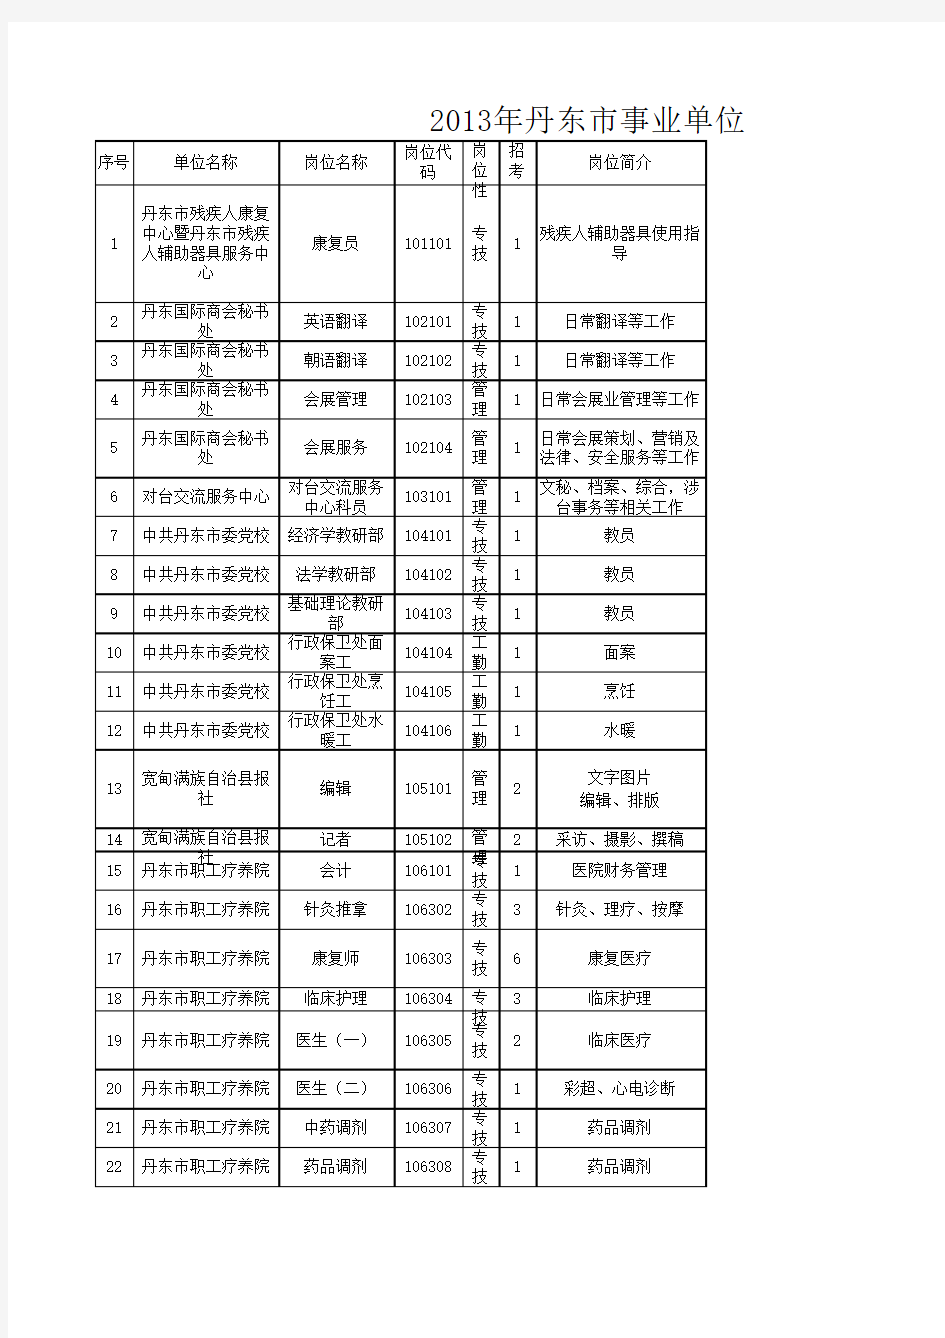 2013年丹东市事业单位公开招聘工作人员岗位信息表